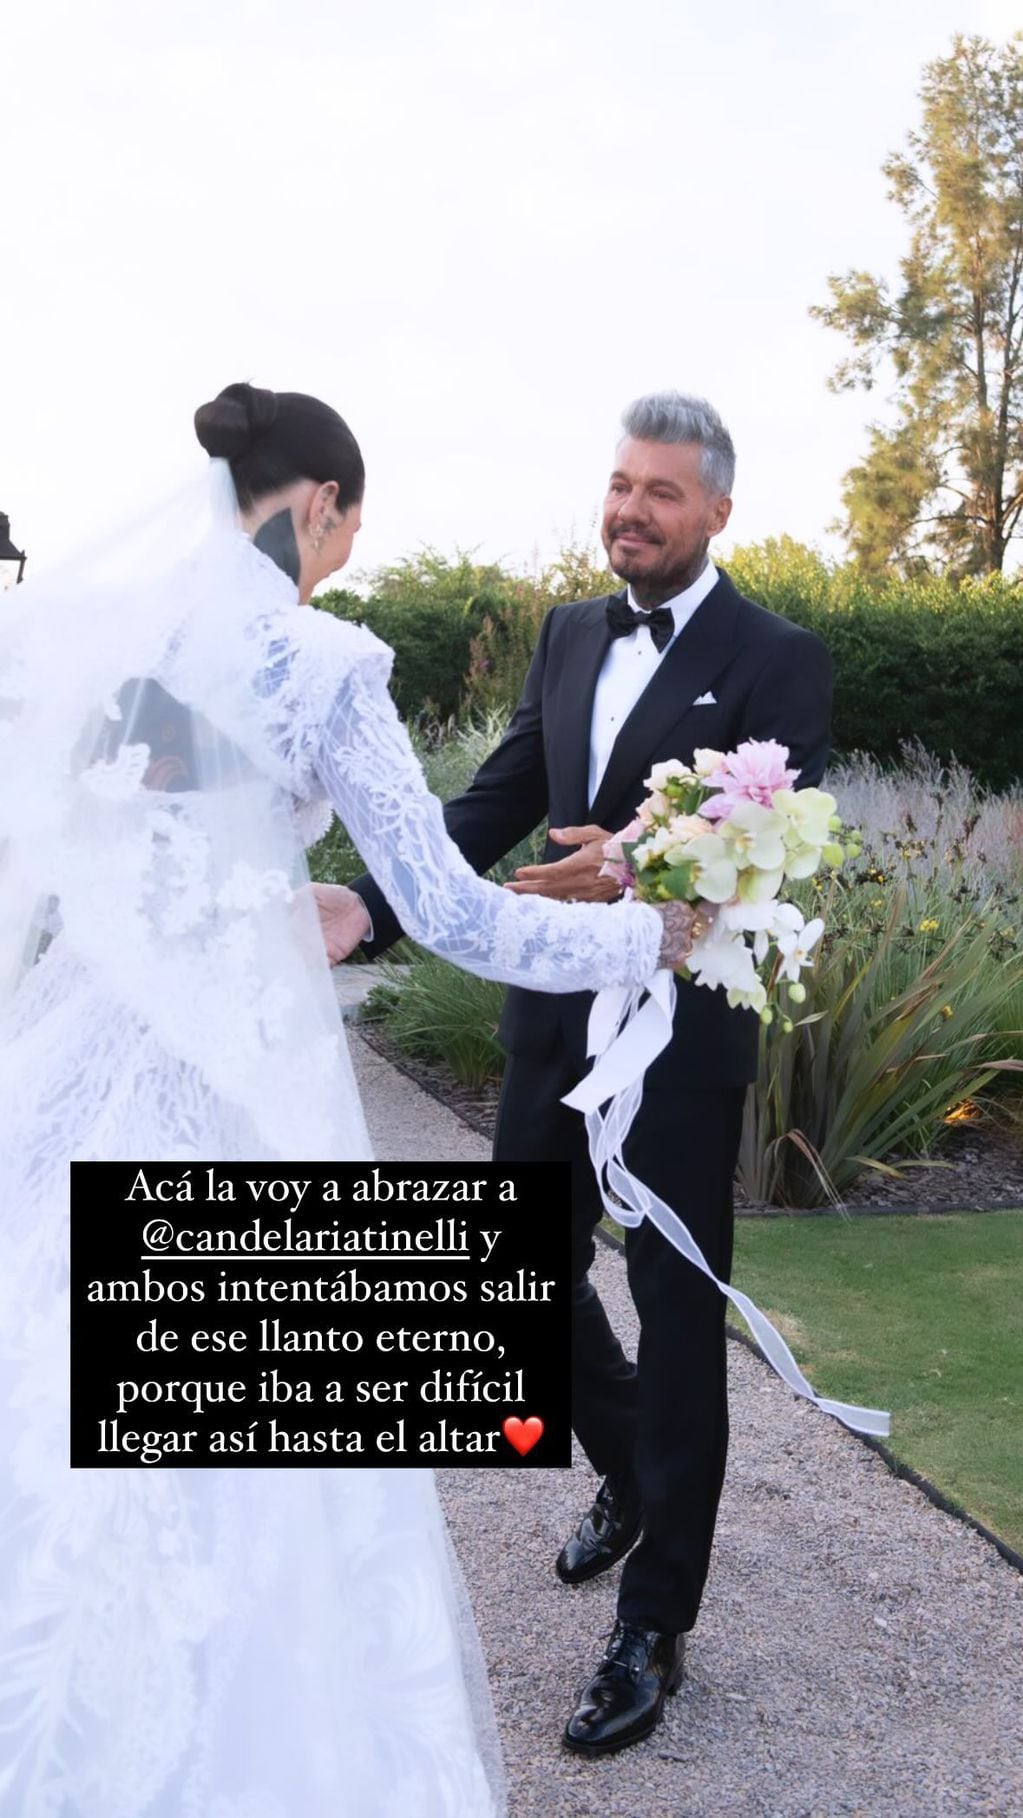 La reacción de Marcelo Tinelli al ver a su hija Cande vestida de novia